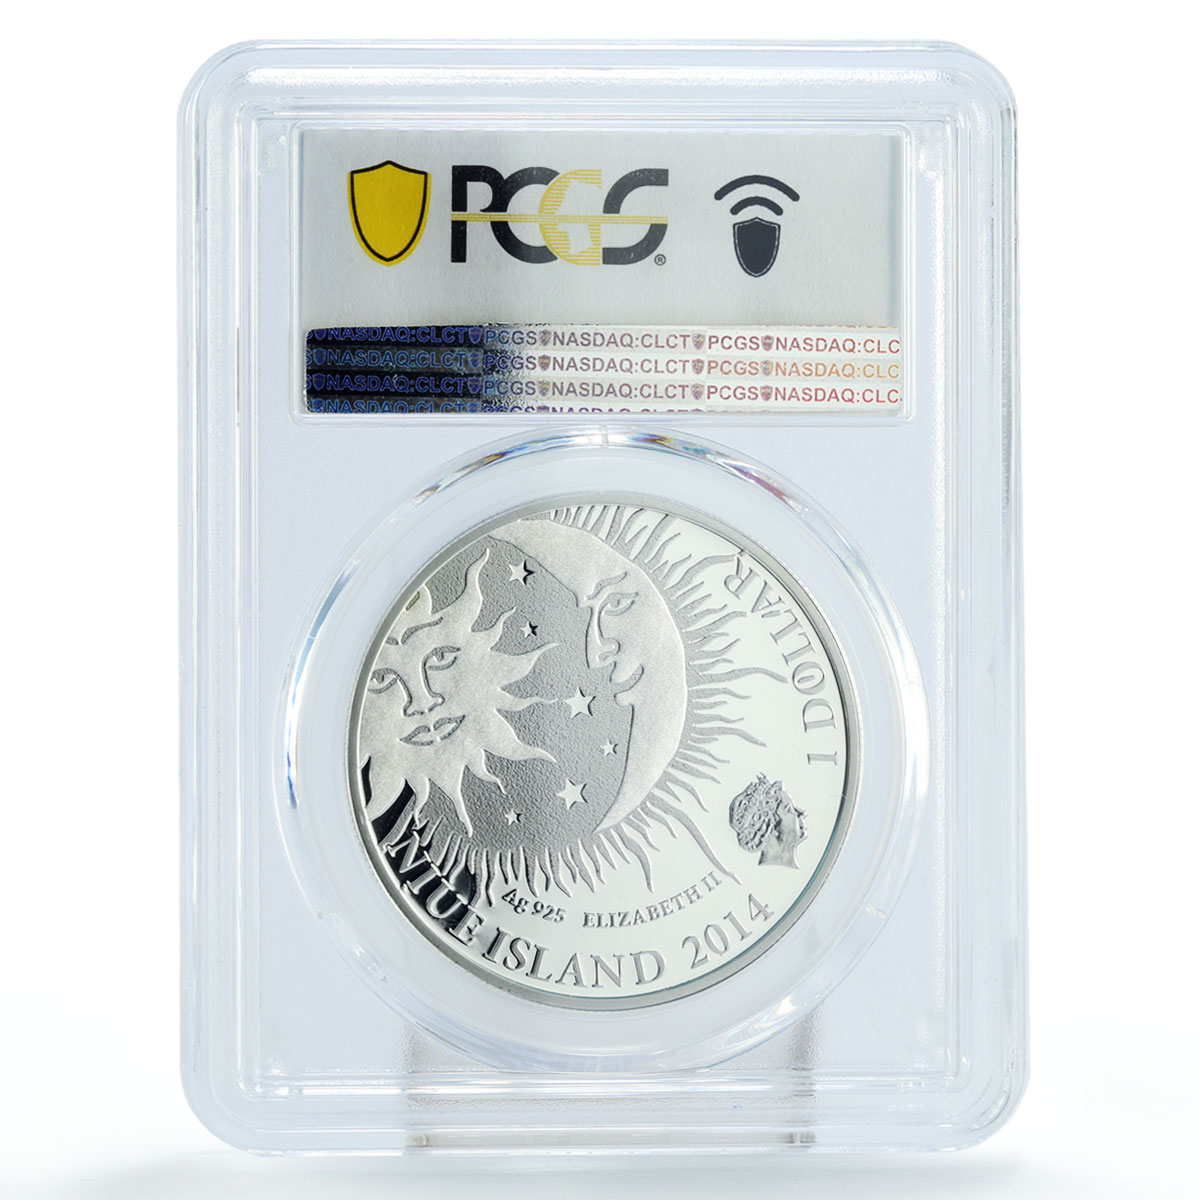 Niue 1 dollar Zodiac Signs series Taurus PR70 PCGS colored silver coin 2014